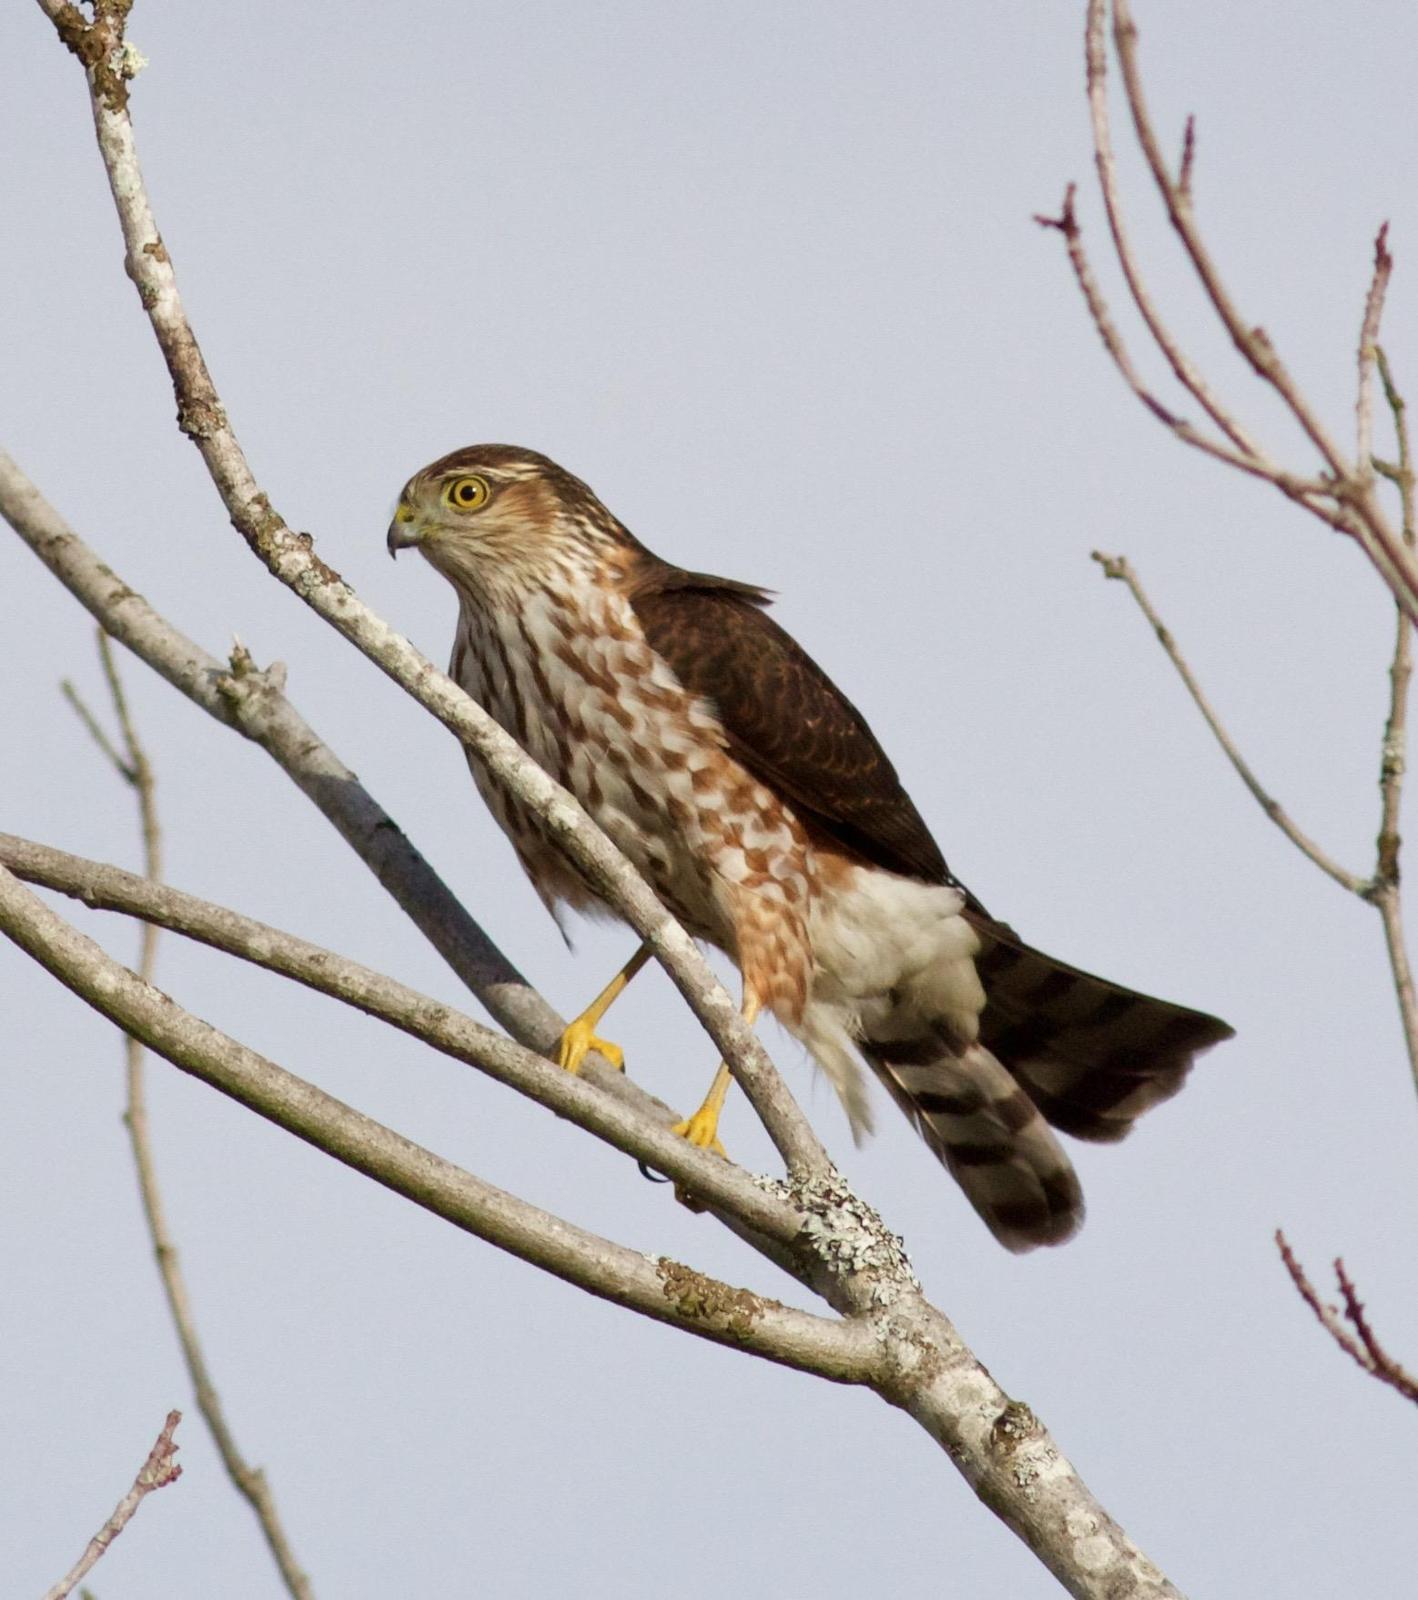 Sharp-shinned Hawk Photo by Kathryn Keith